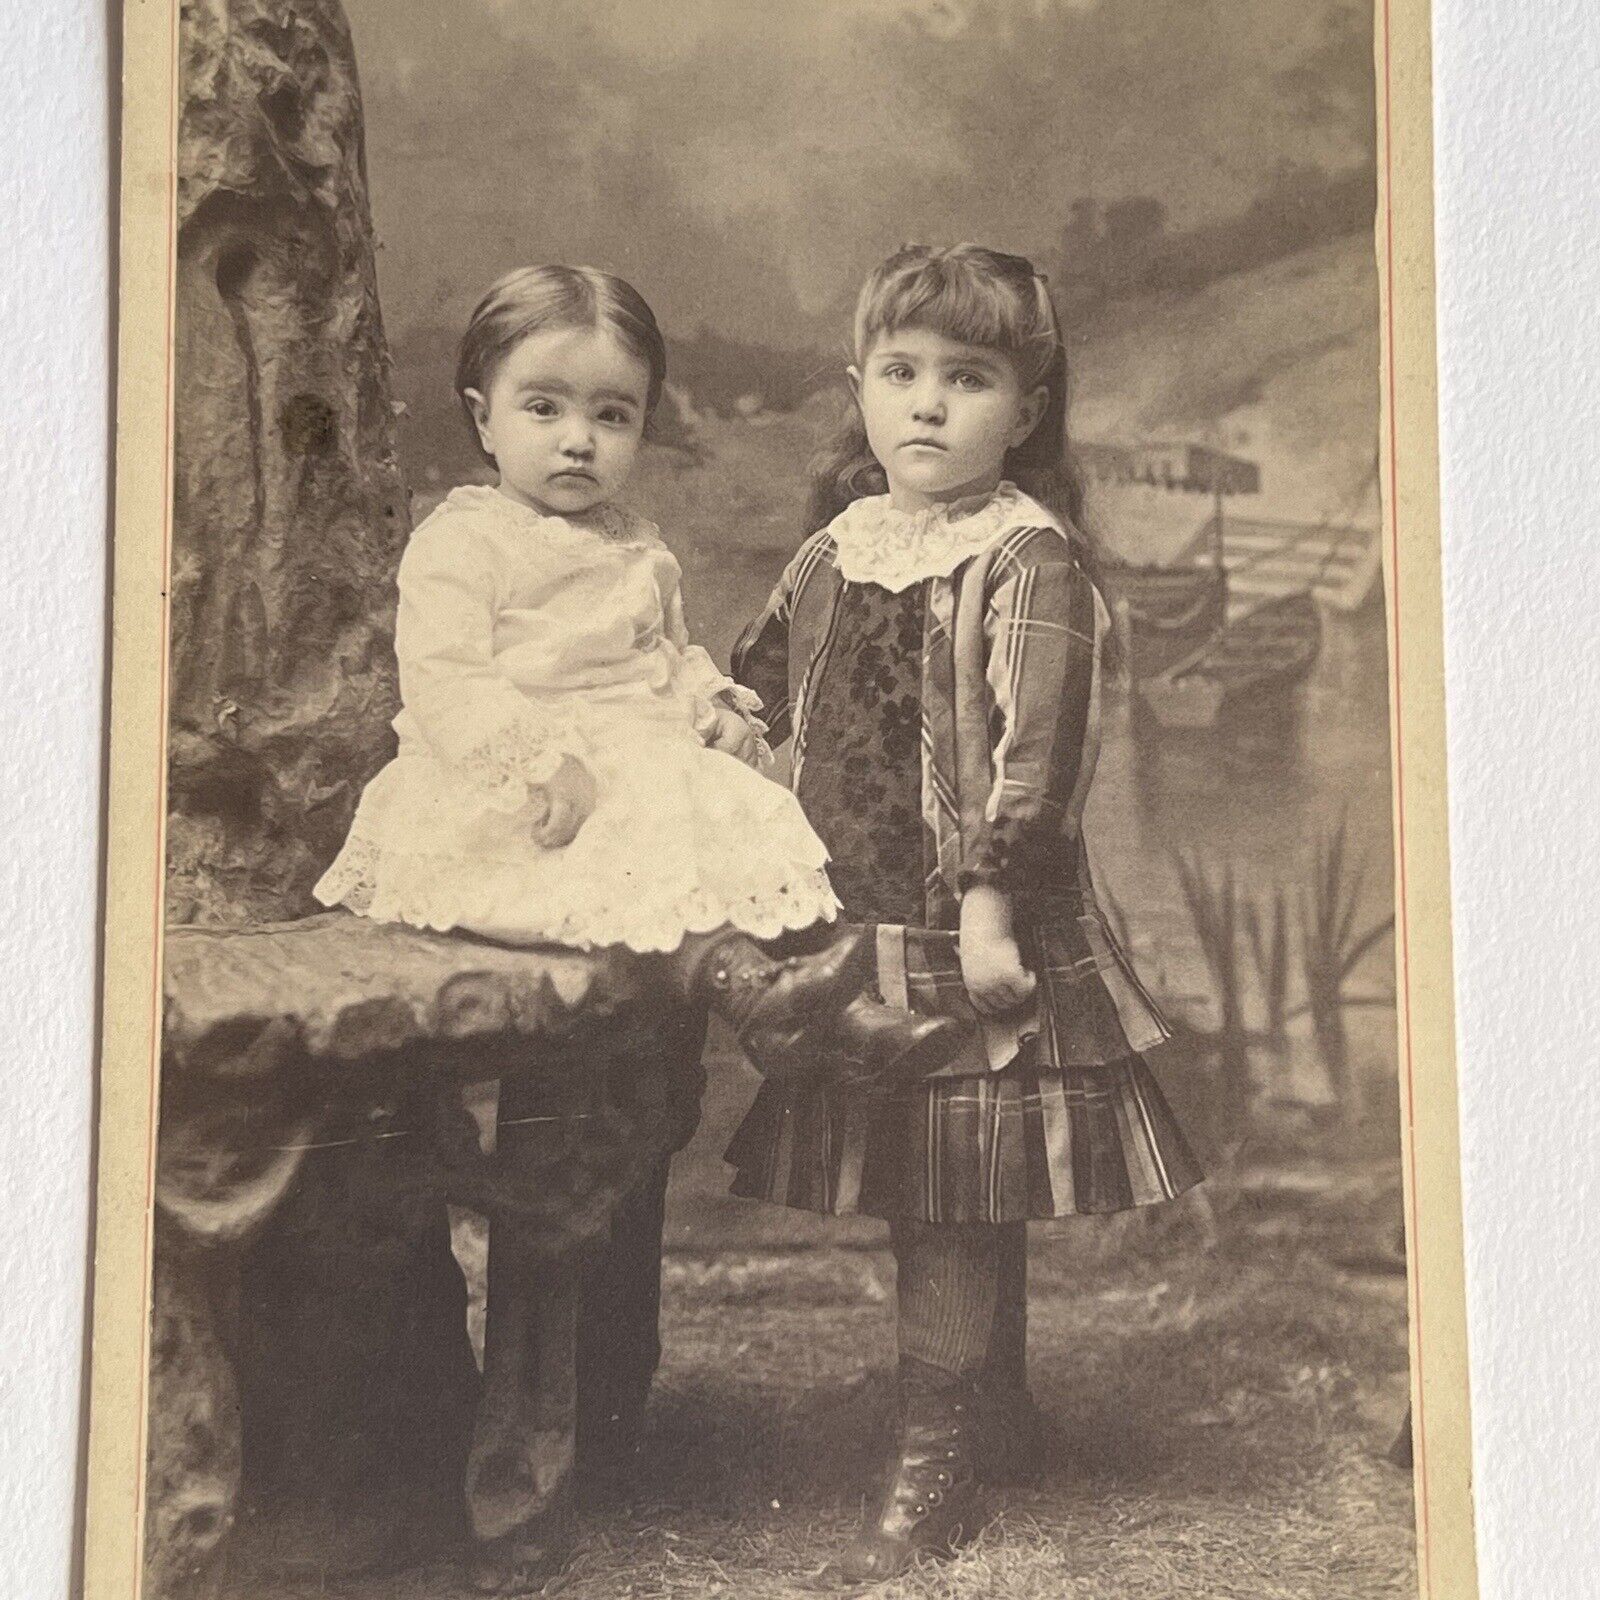 Antique Cabinet Card Photograph Adorable Little Girls Children Le Mars IA